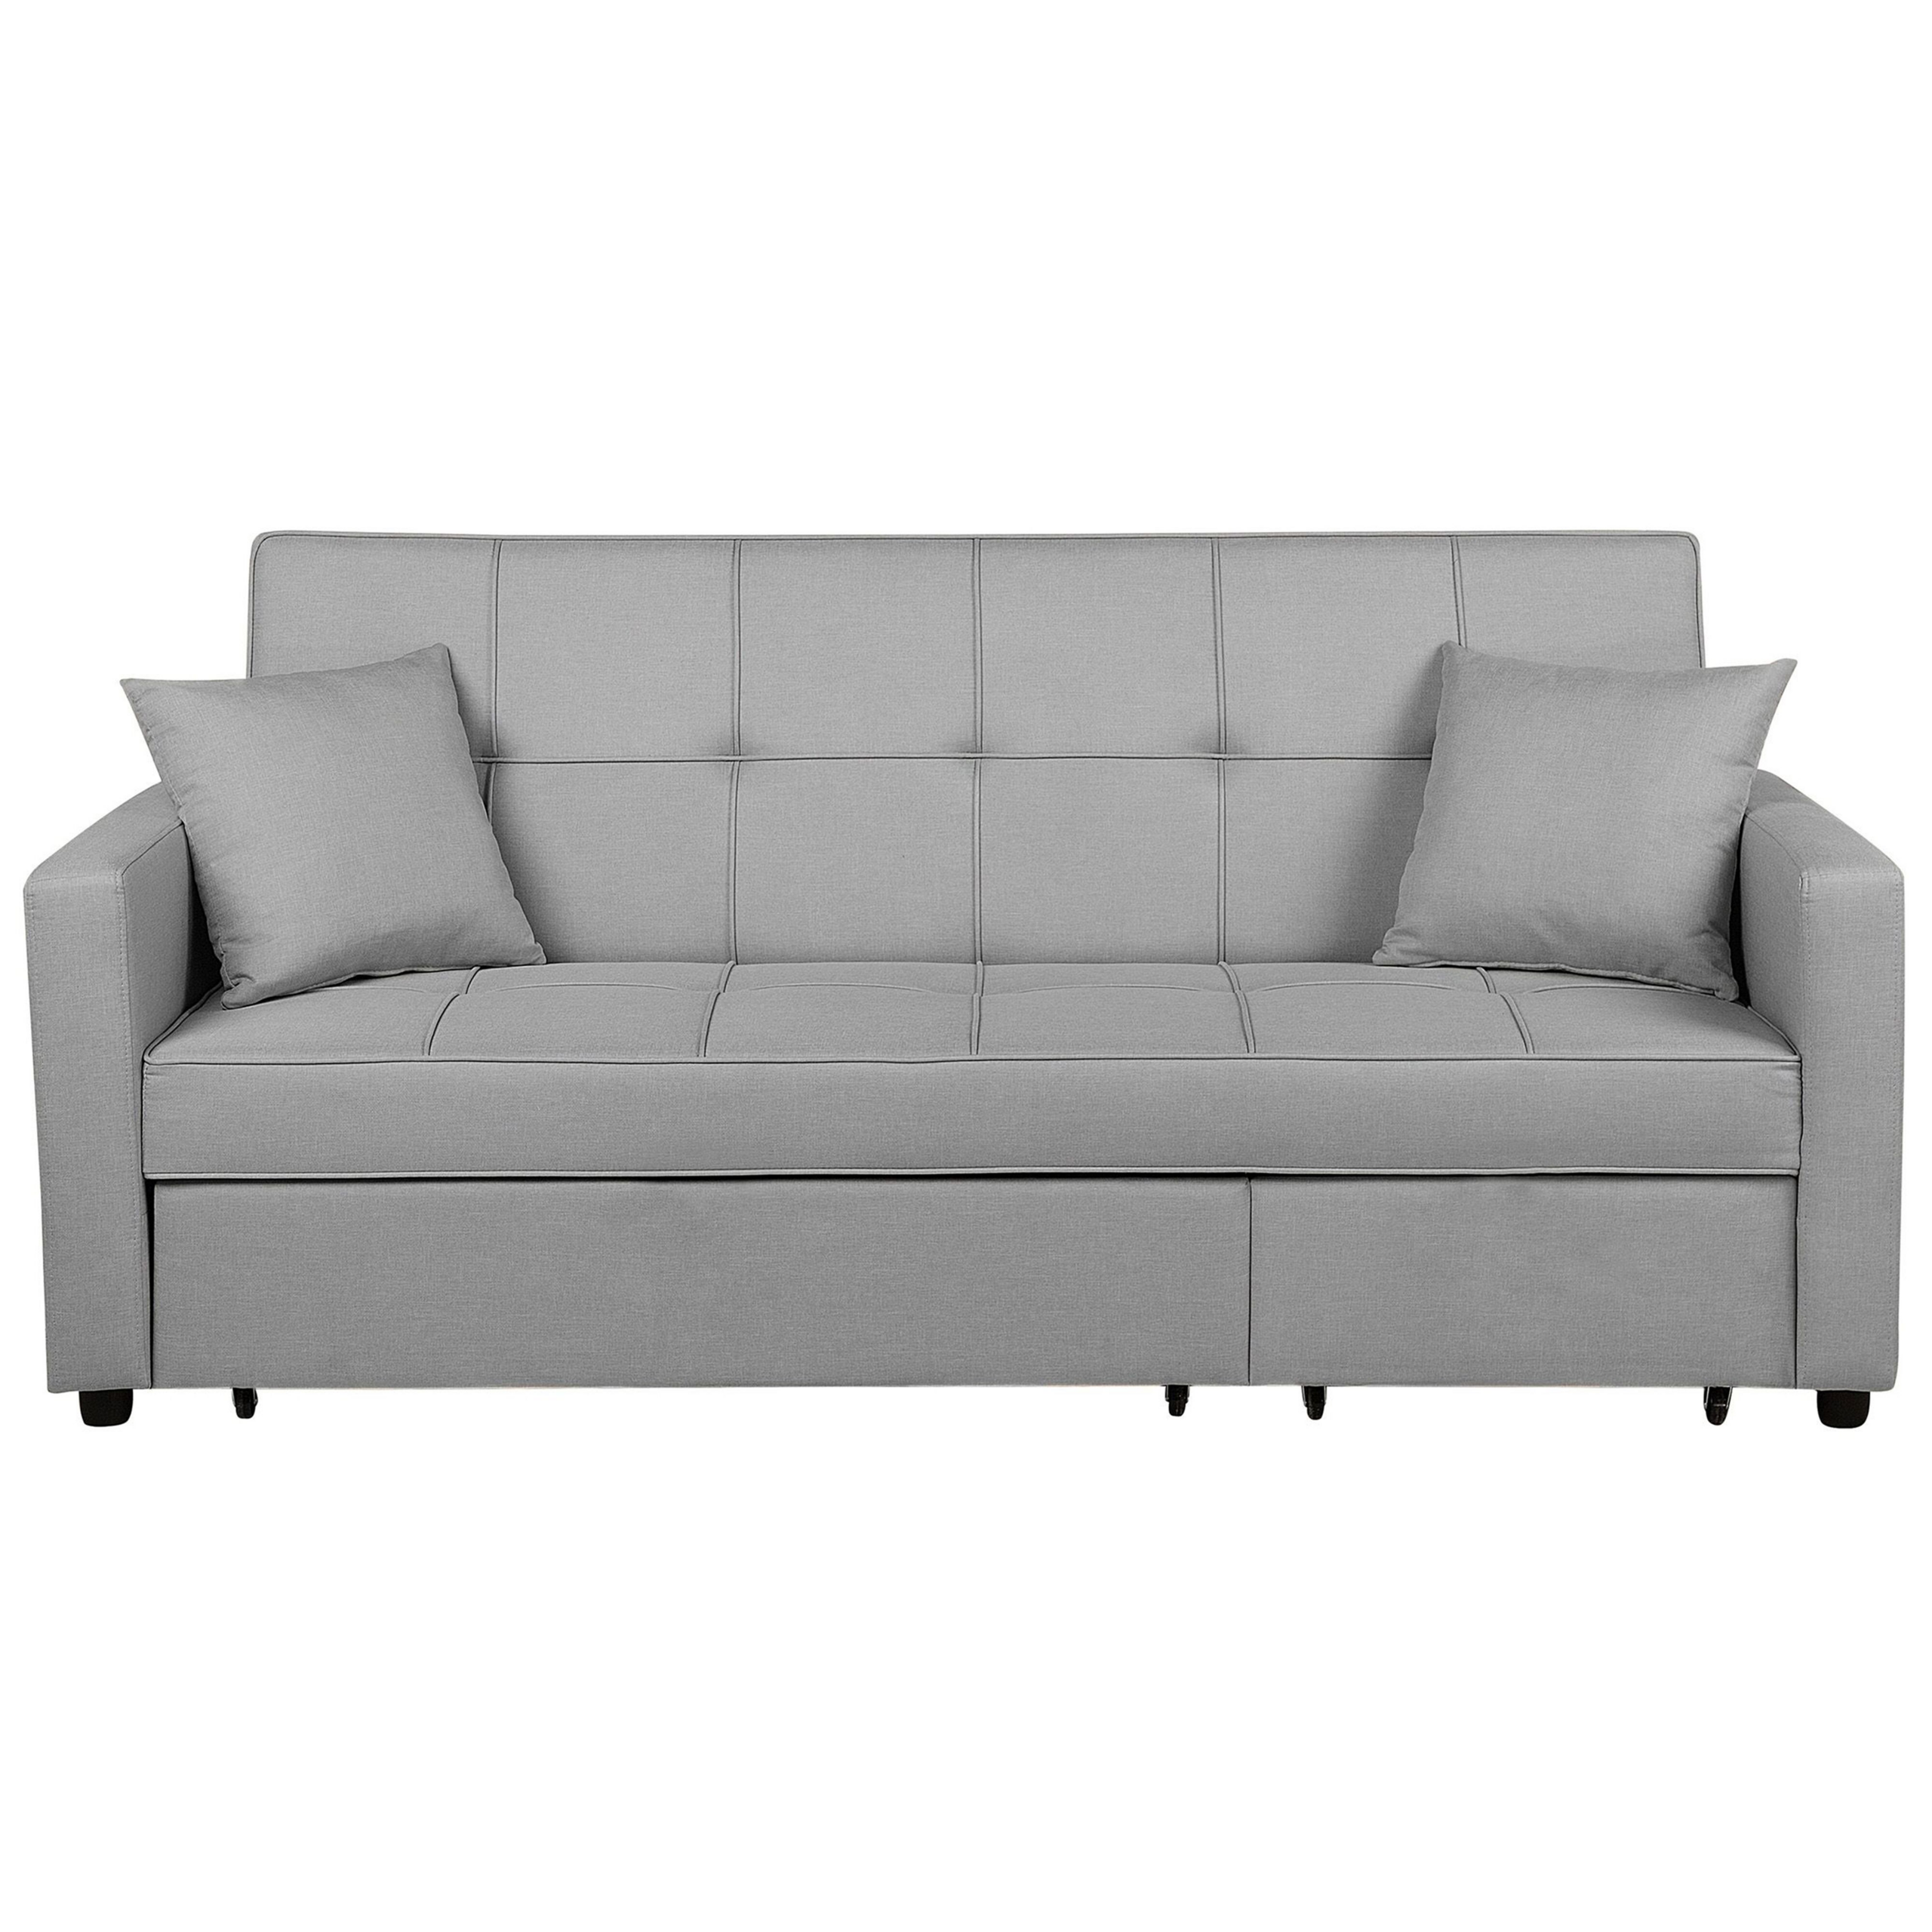 Beliani Sofa Bed Grey Sleeping Function Modern Upholstered